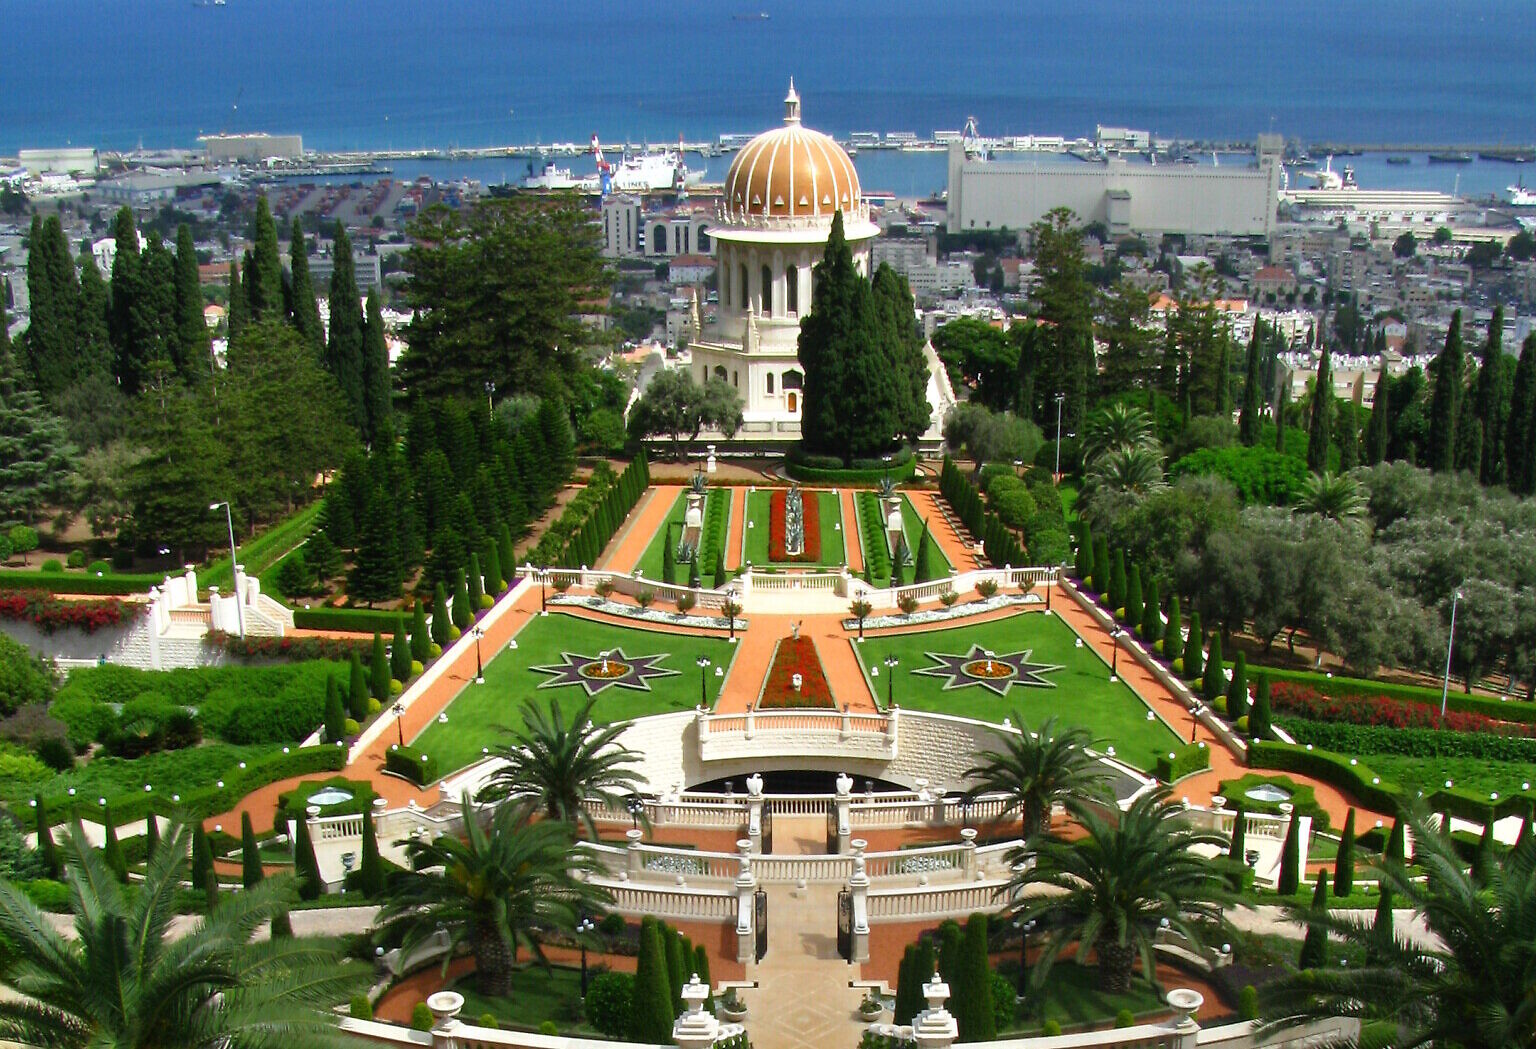 At His Haifa Tomb